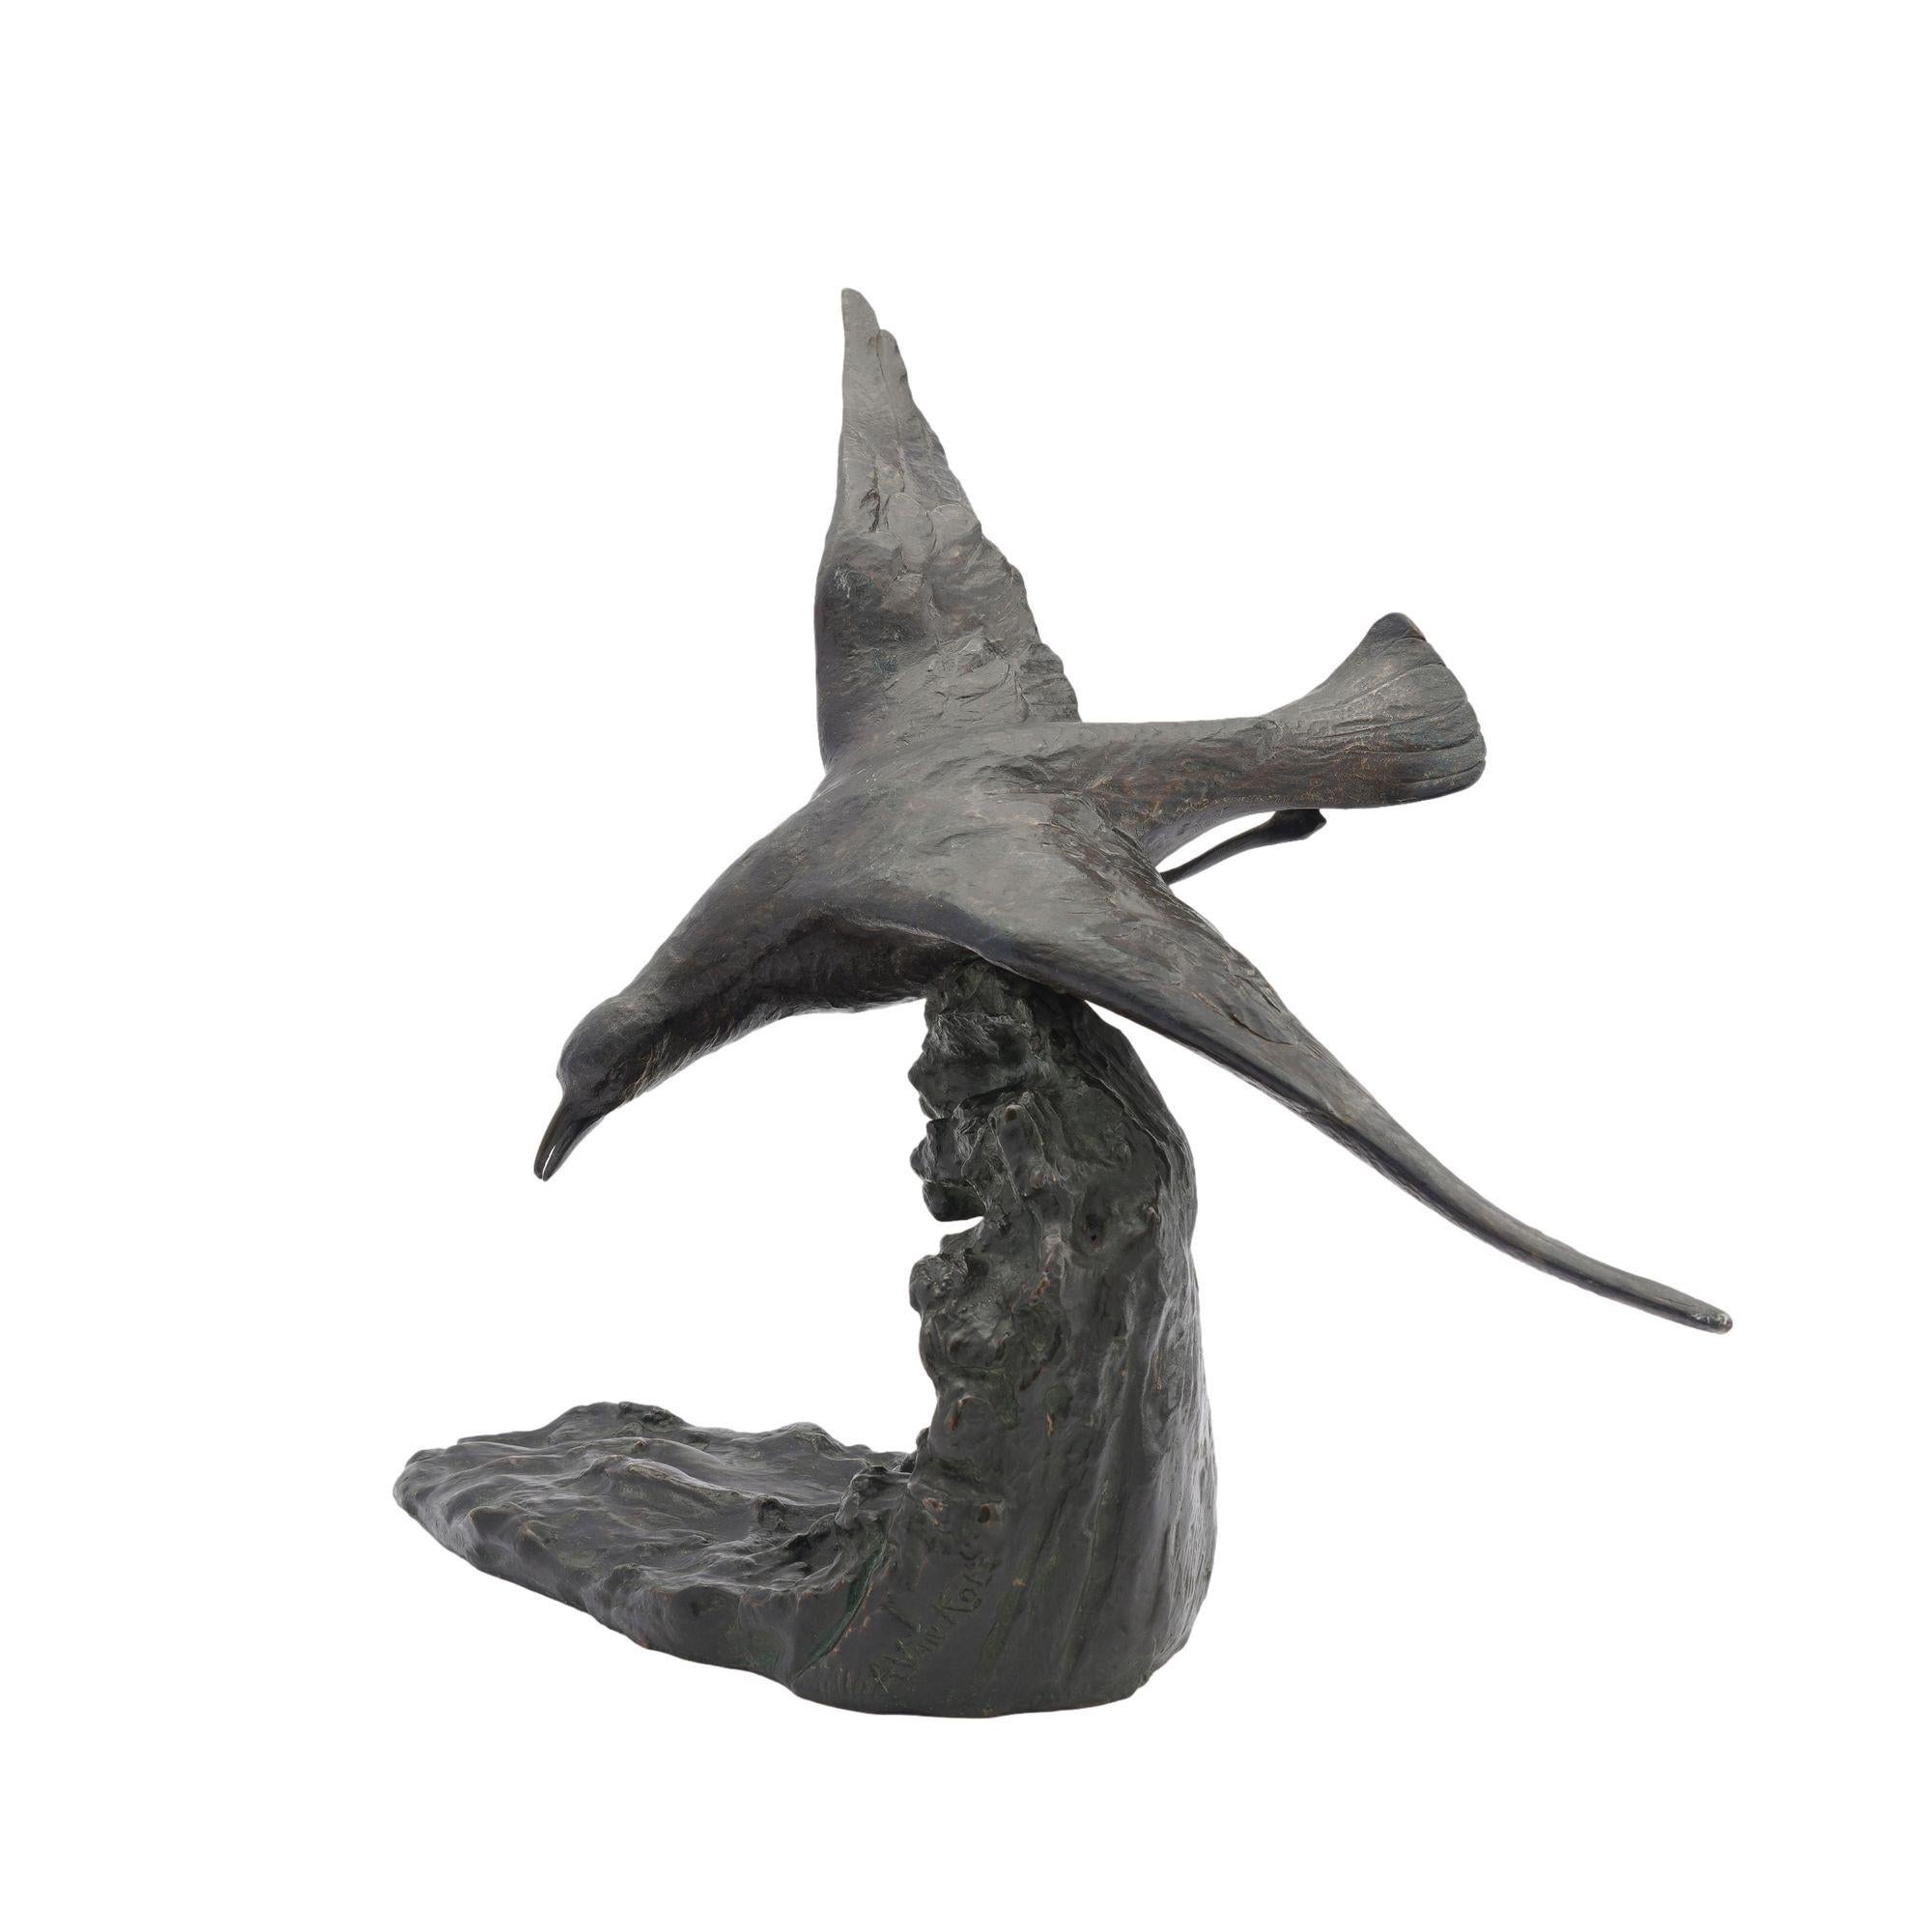 Sculpture Art déco en bronze coulé représentant un oiseau volant sur la crête d'une vague.
Signé sur la base à l'arrière du moulage : Alvan Kote.